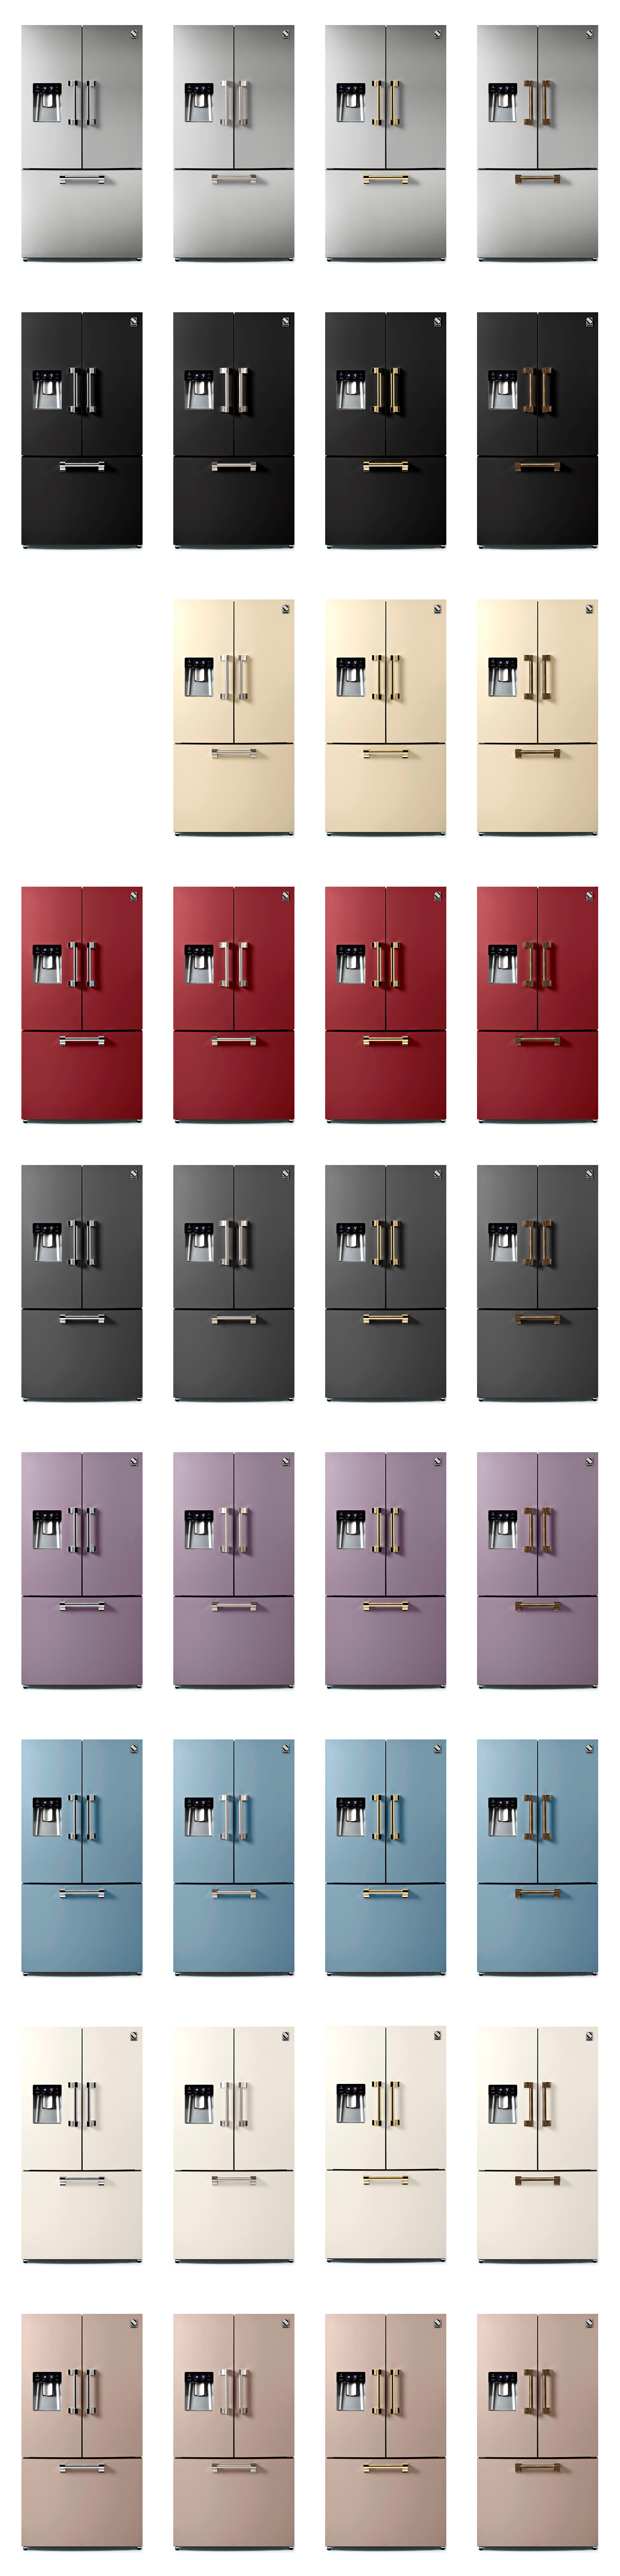 farebné prevedenia chladničky s francúzskymi dverami ASCOT